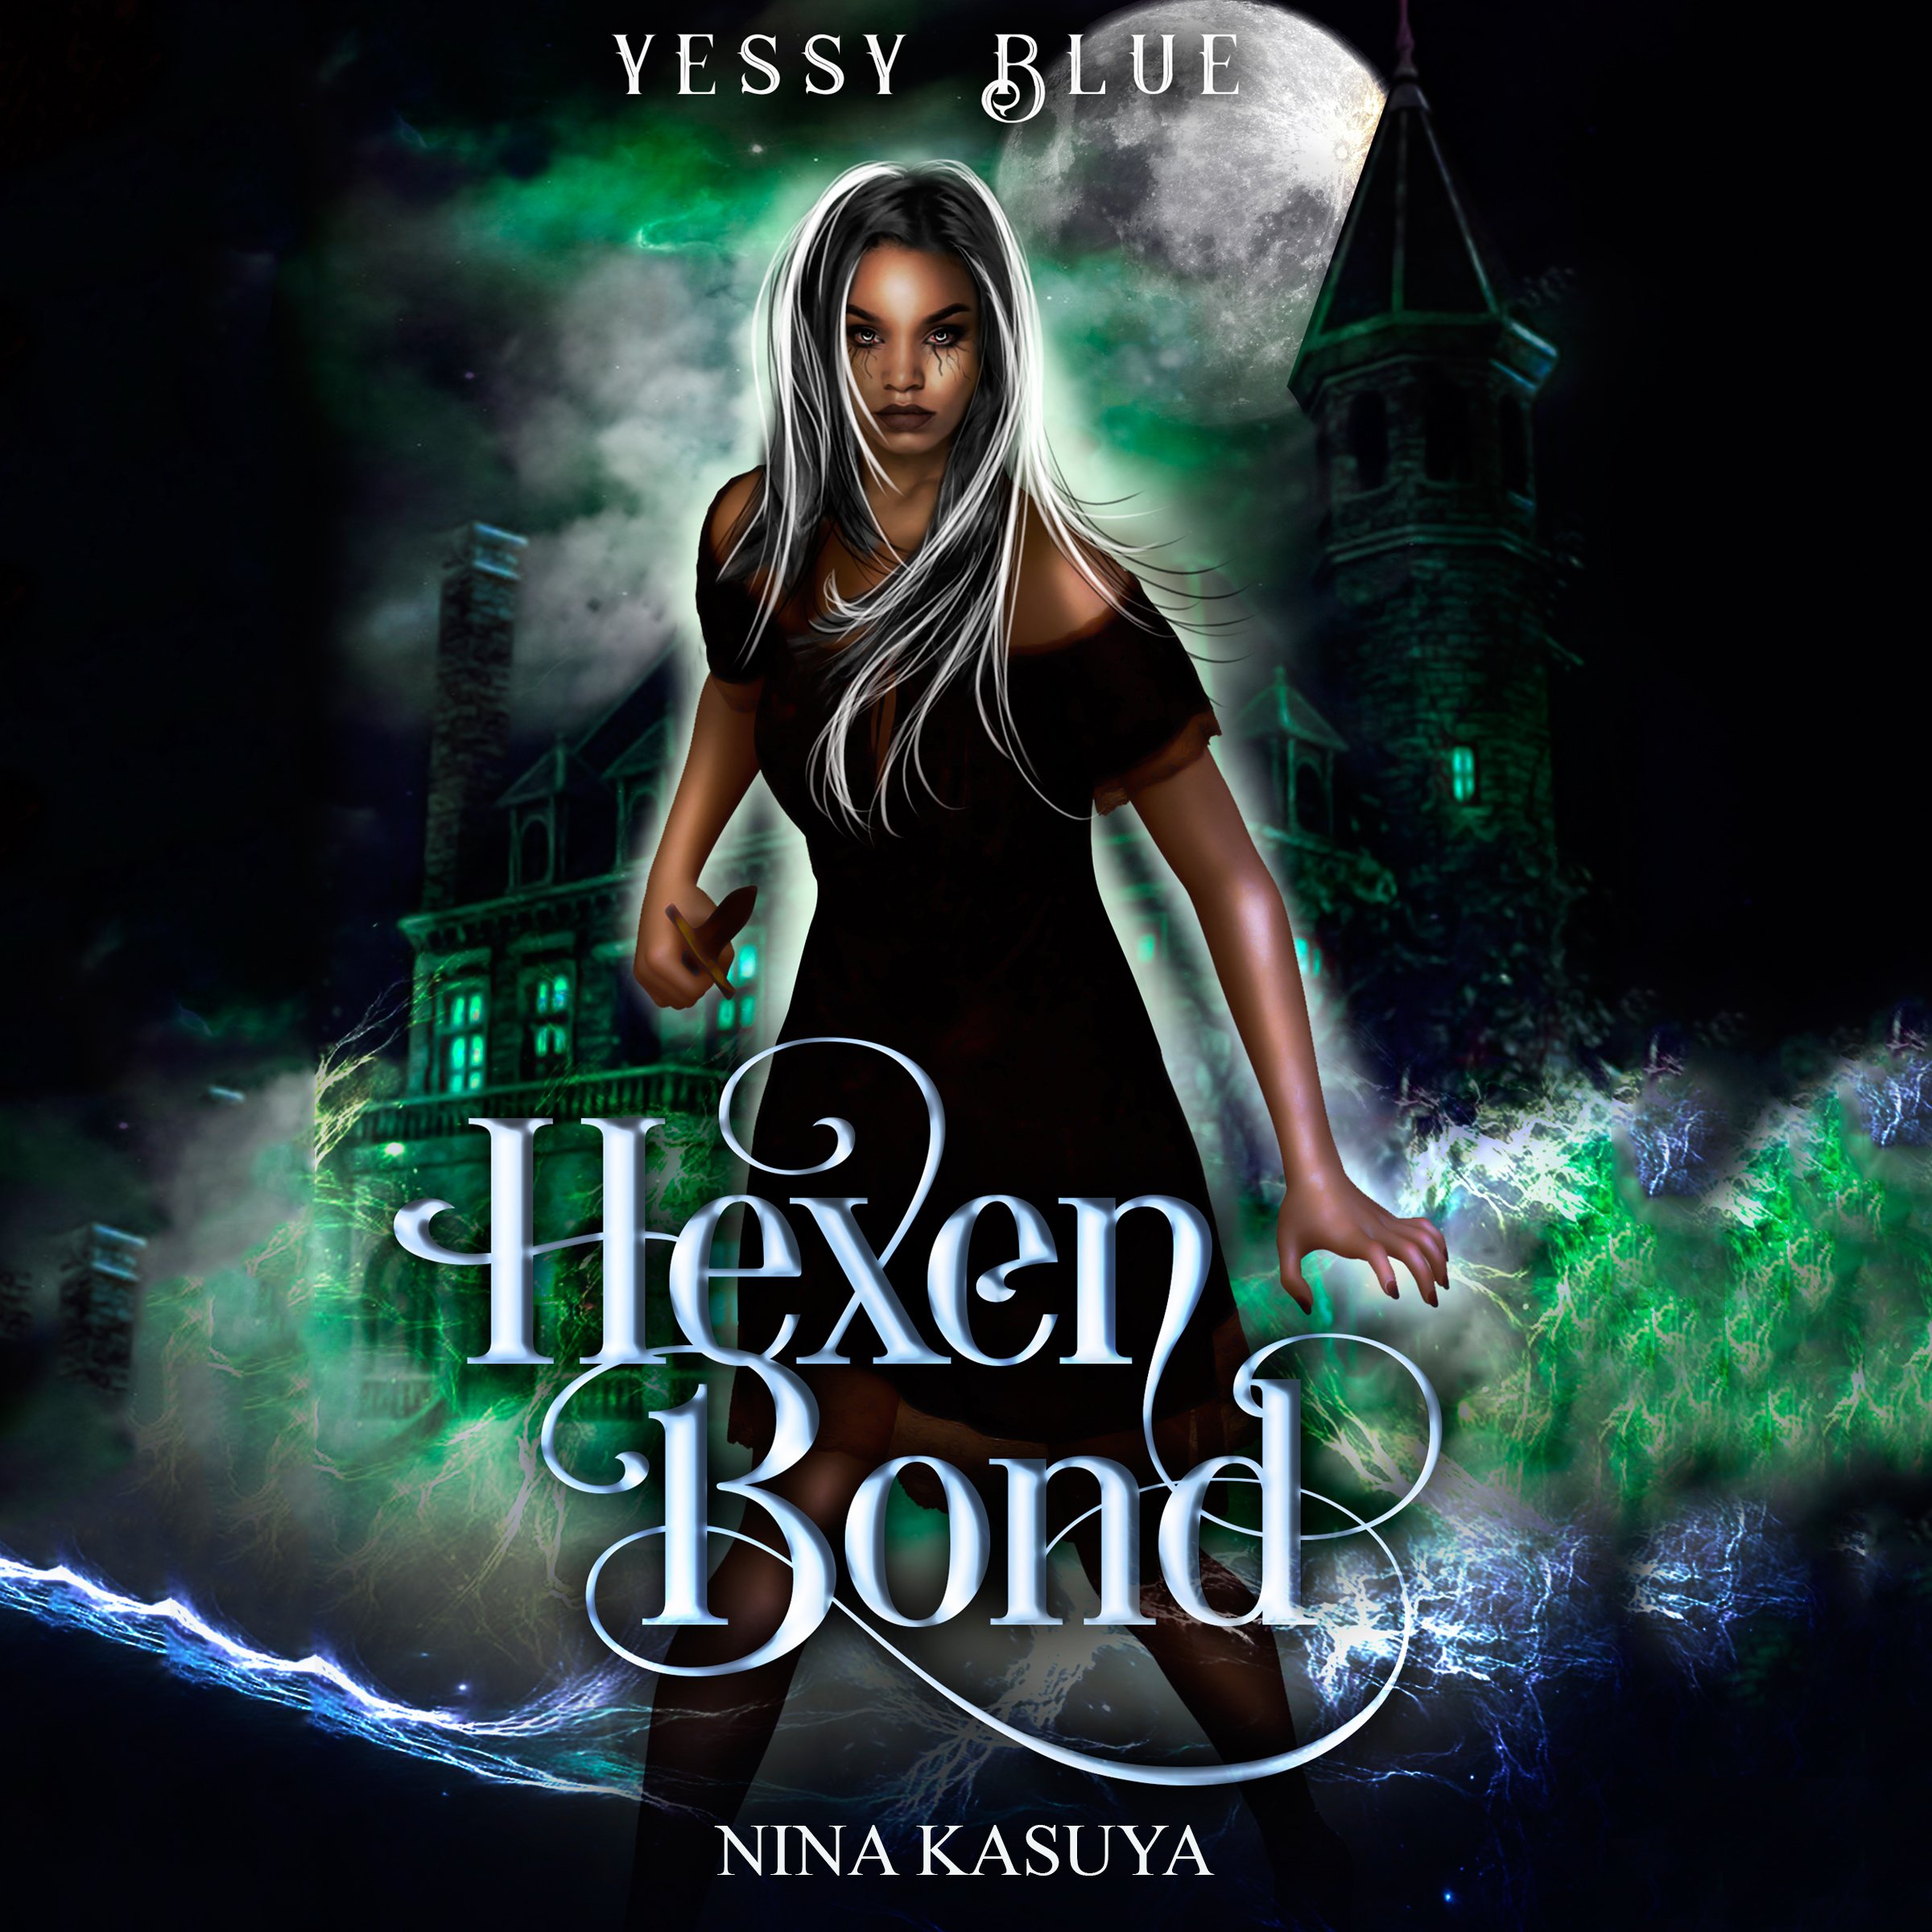 Audiobook Cover_Yessy Blue_Hexen Bond.jpg